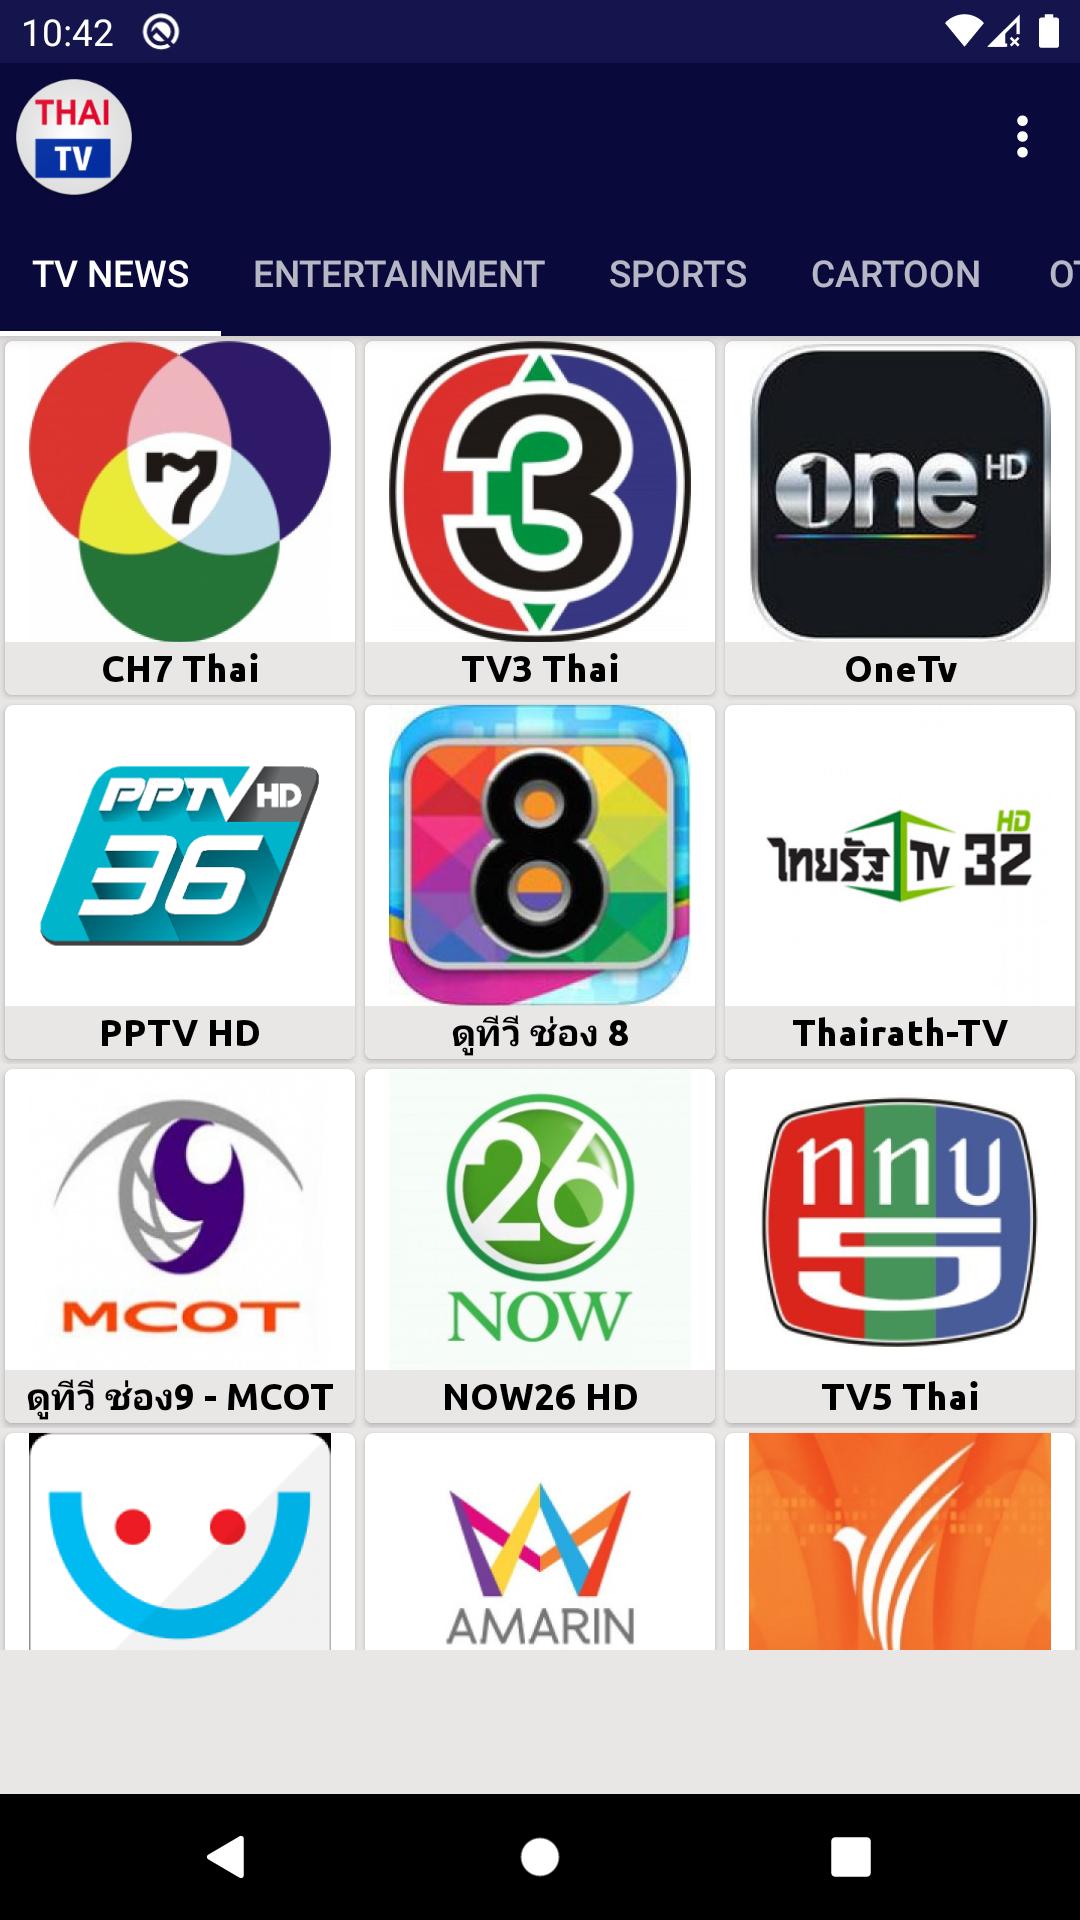 Online bit 32 tv thai 